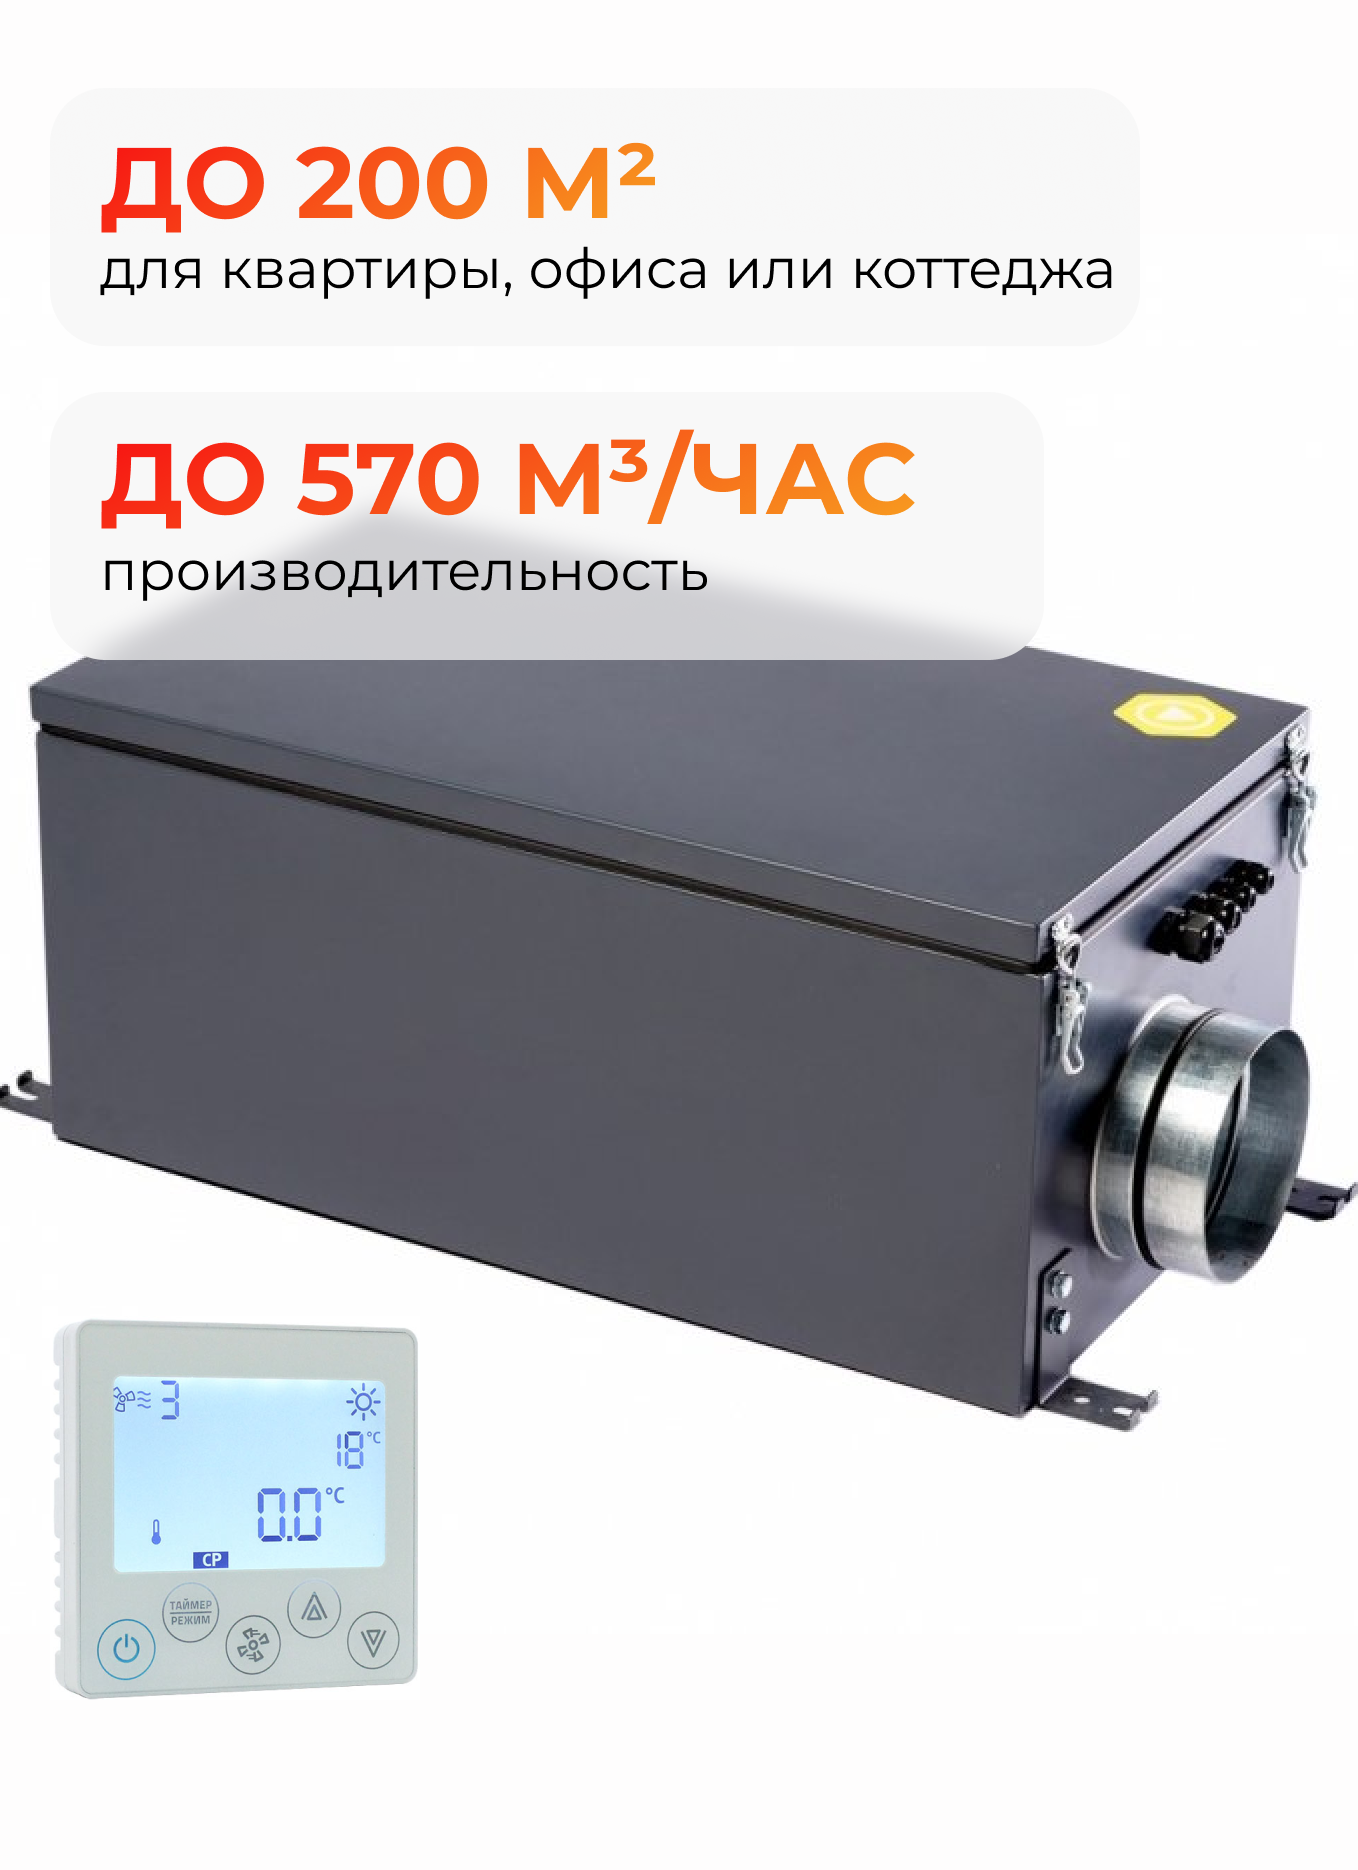 Вентиляционная установка Minibox E650 Zentec вентиляционная установка minibox e650 zentec